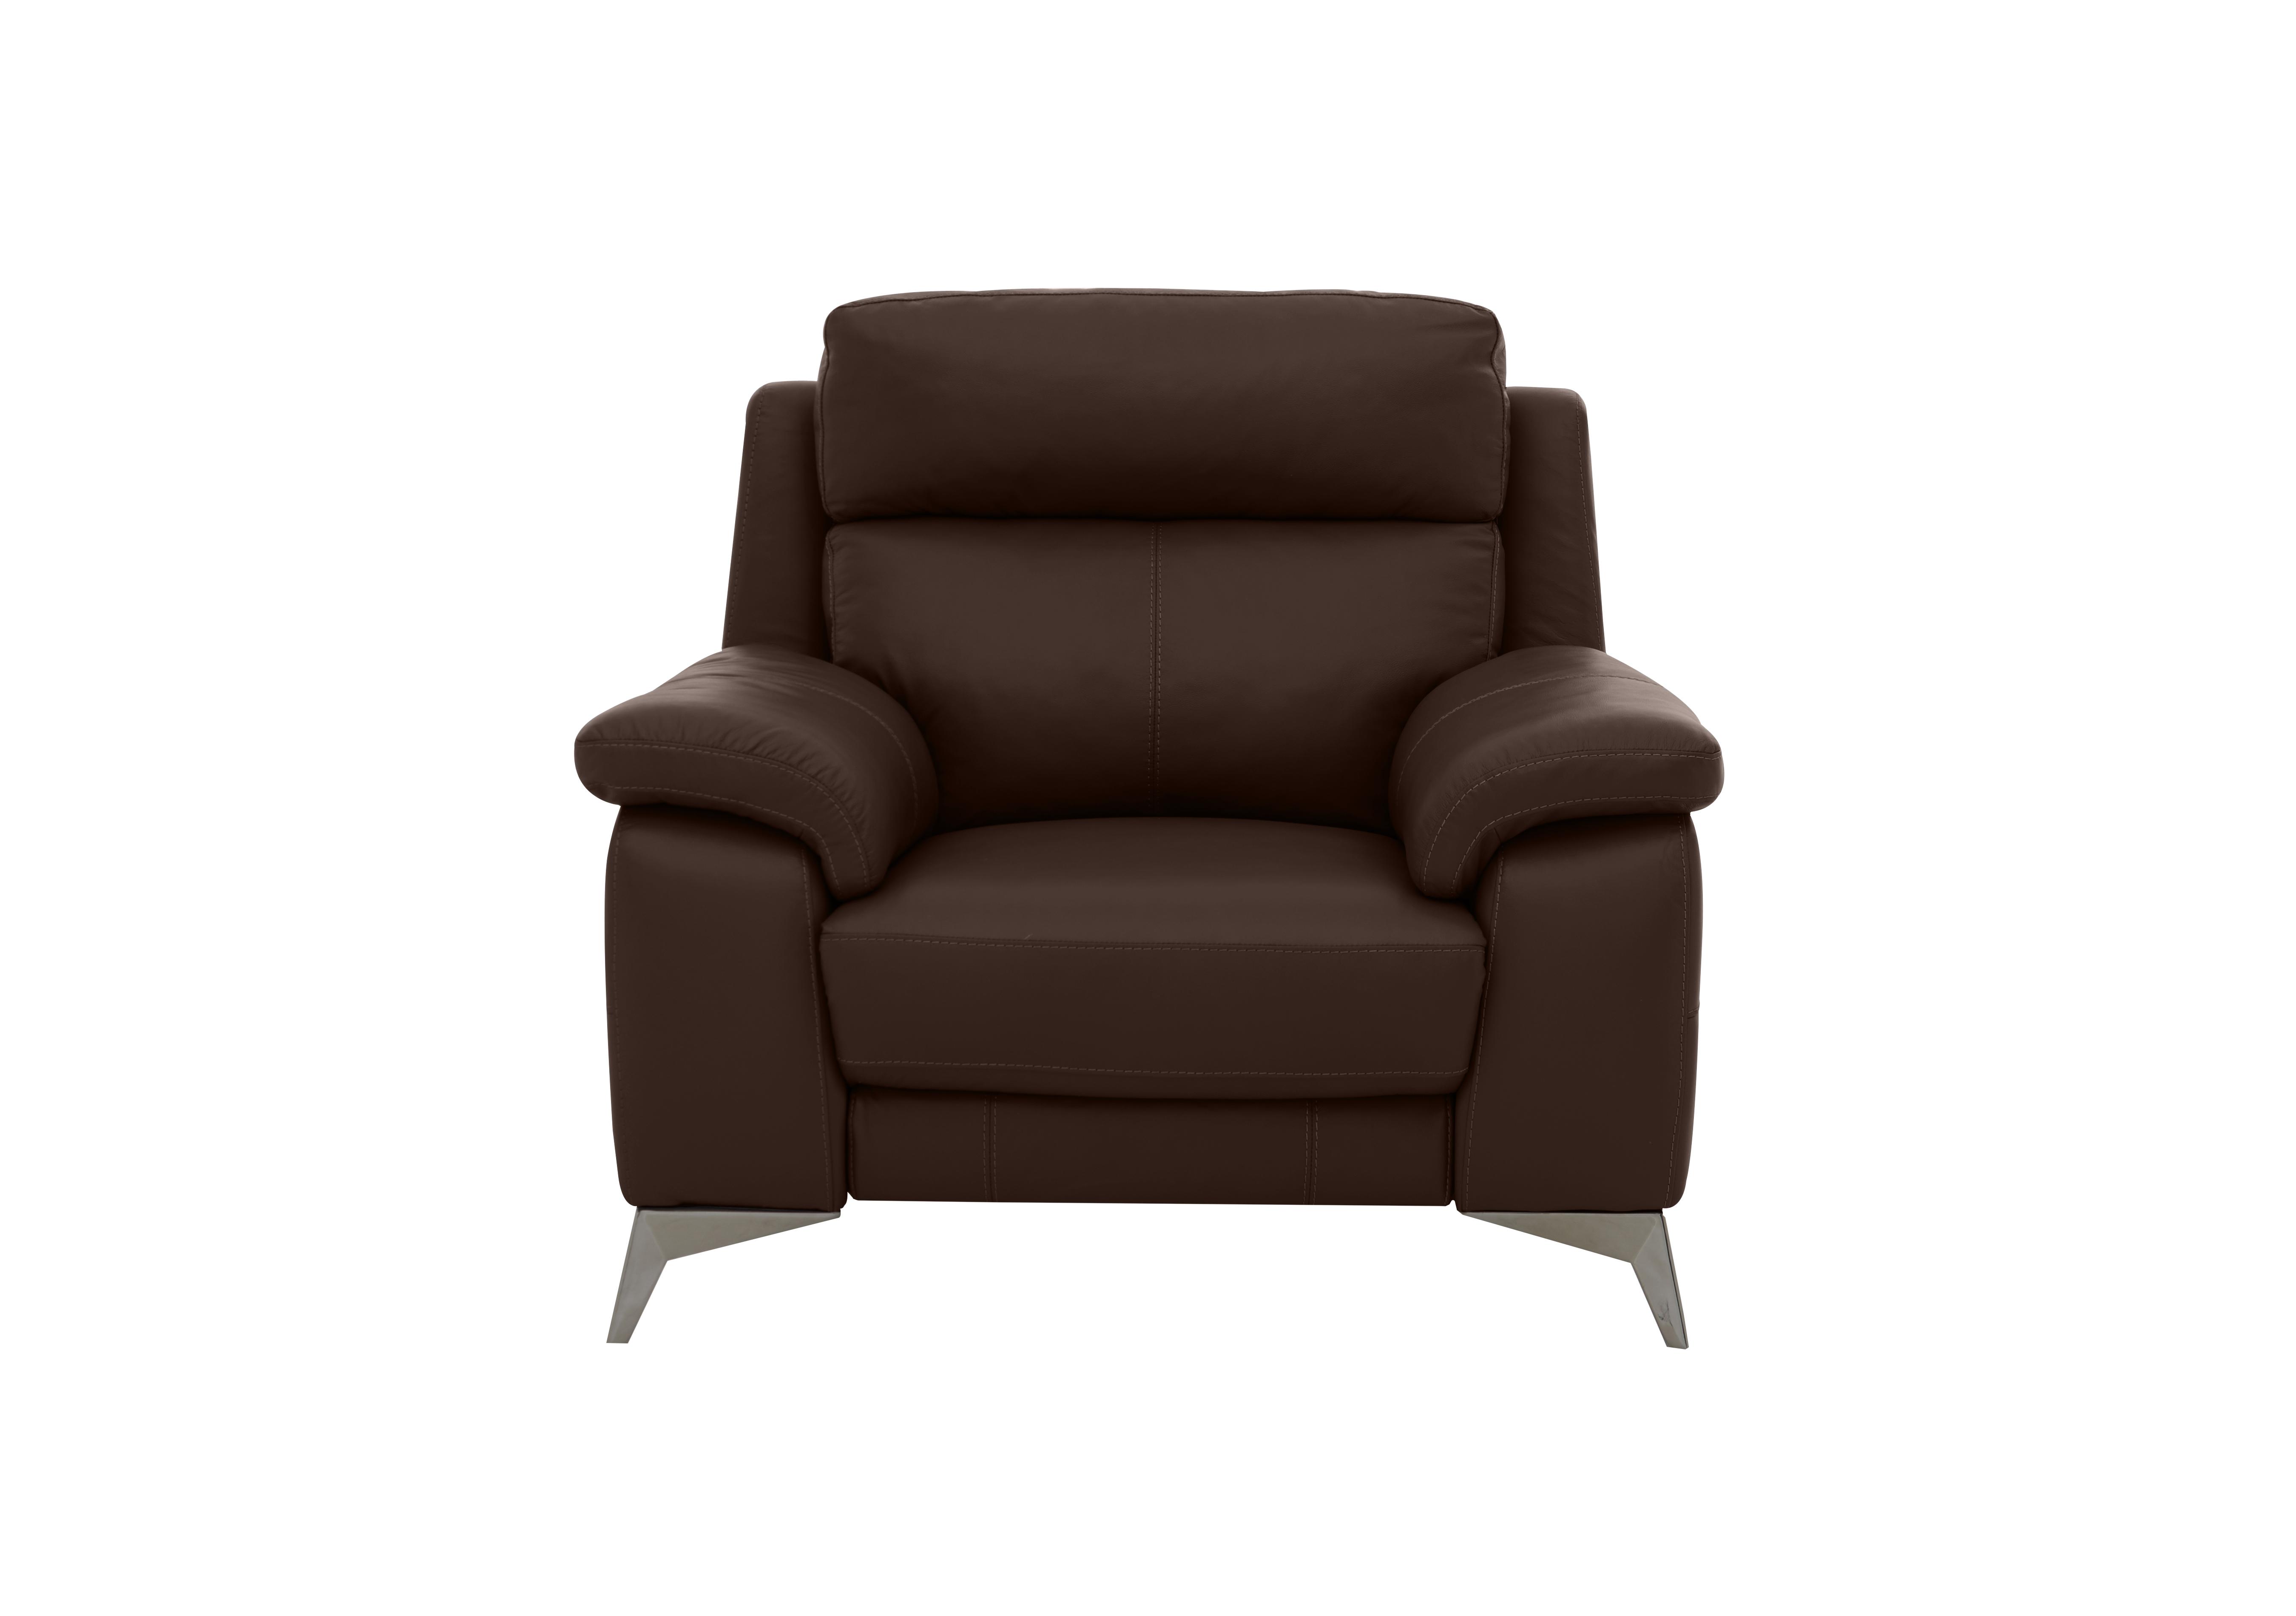 Missouri Leather Recliner Armchair with Power Headrest in Bv-1748 Dark Chocolate on Furniture Village